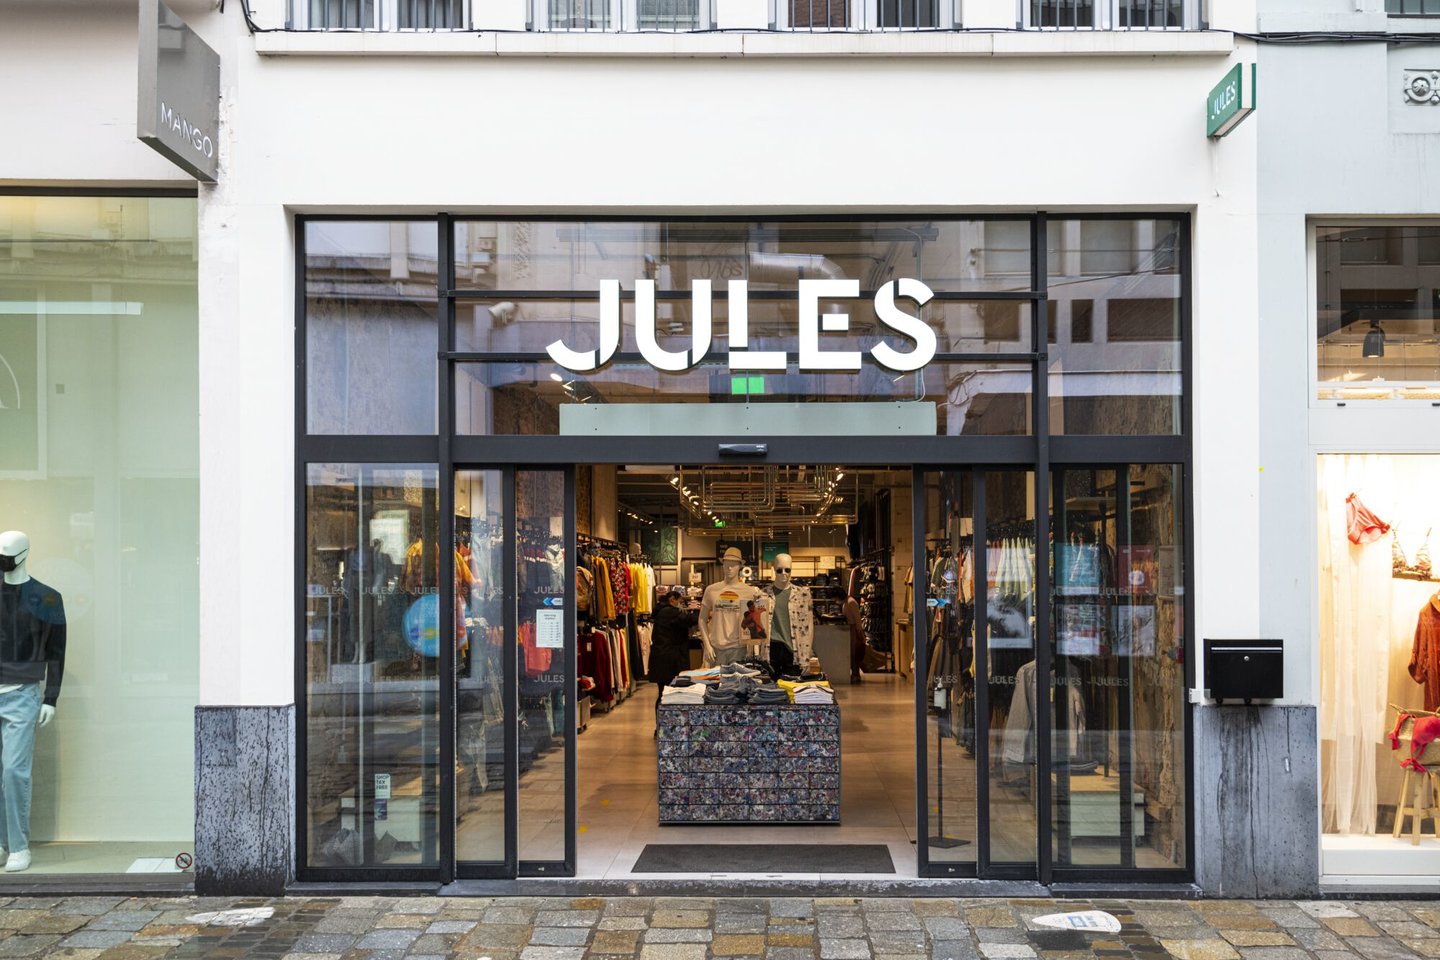 Etalage van kledingwinkel Jules in Gent